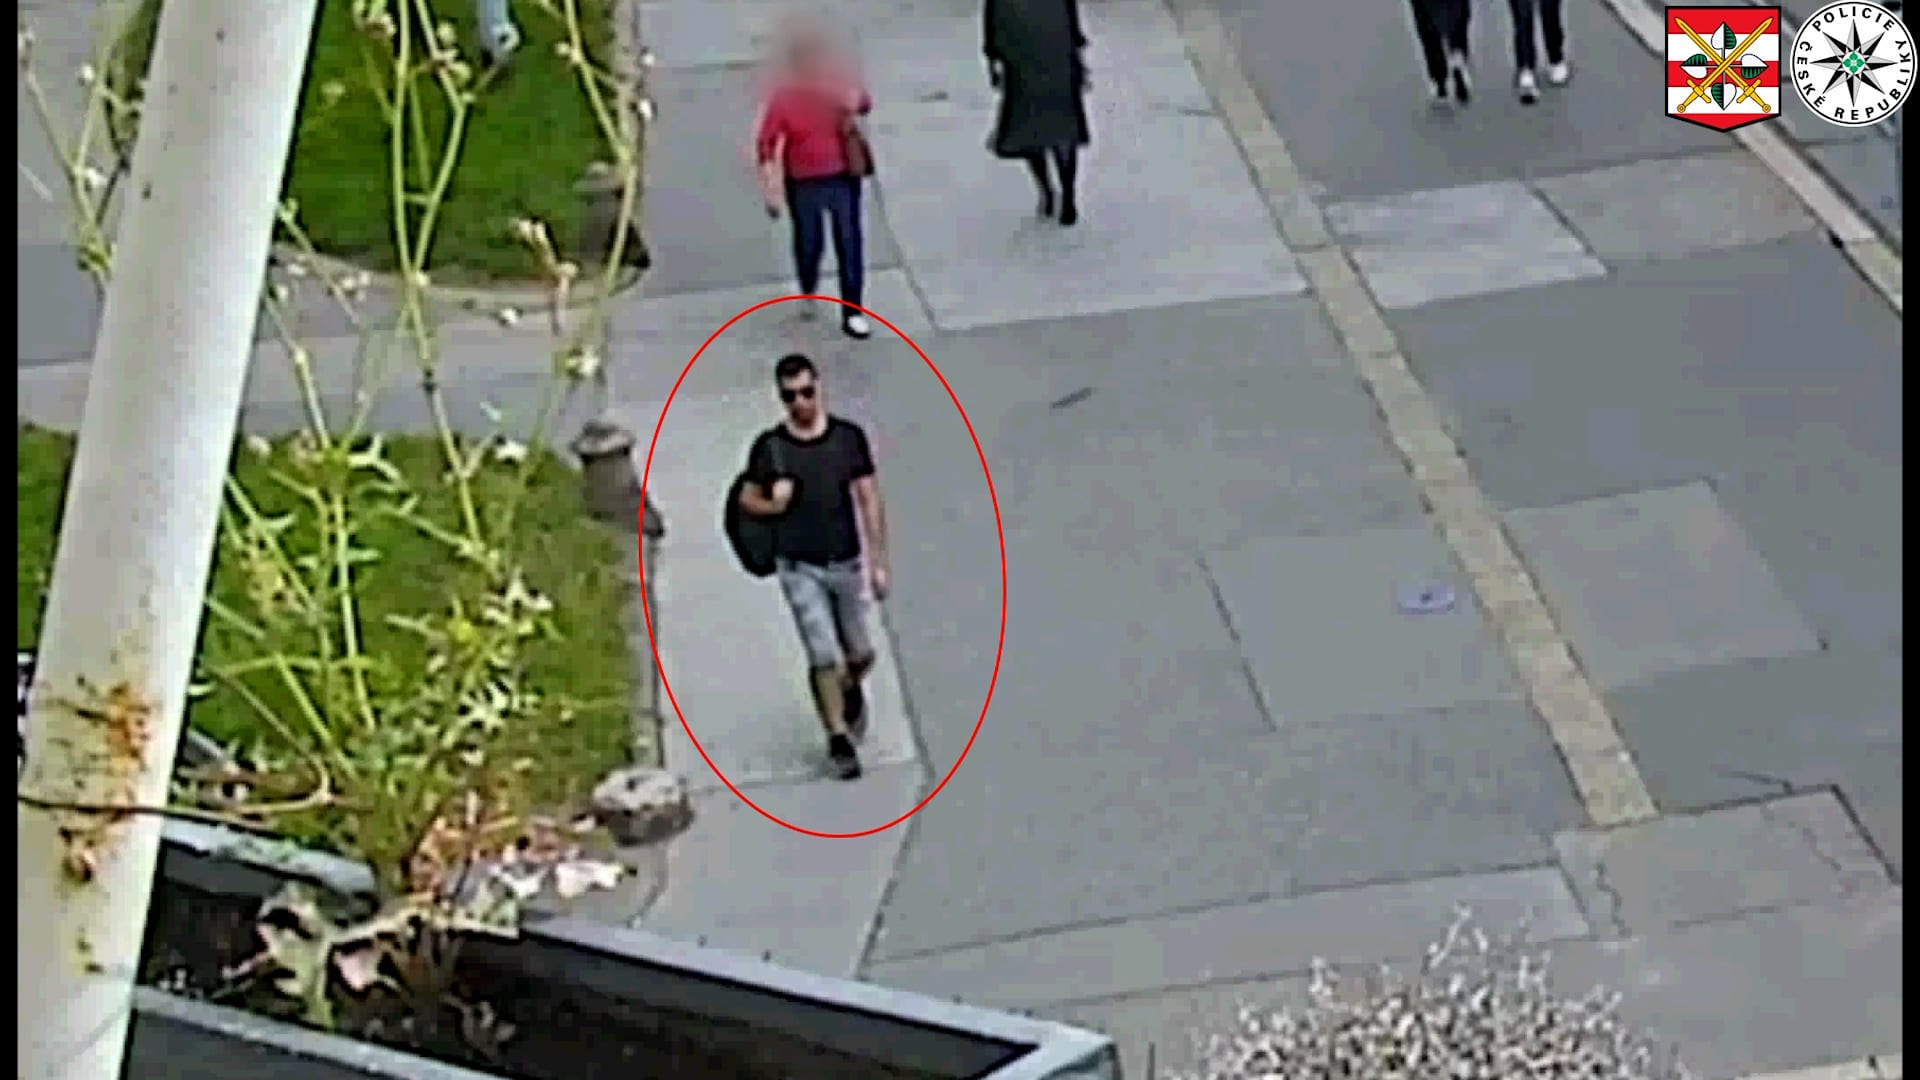 Policie zveřejnila videozáznam s mužem zachyceným krátce po činu, kriminalistům by podle policie mohl poskytnout cenné svědectví. 